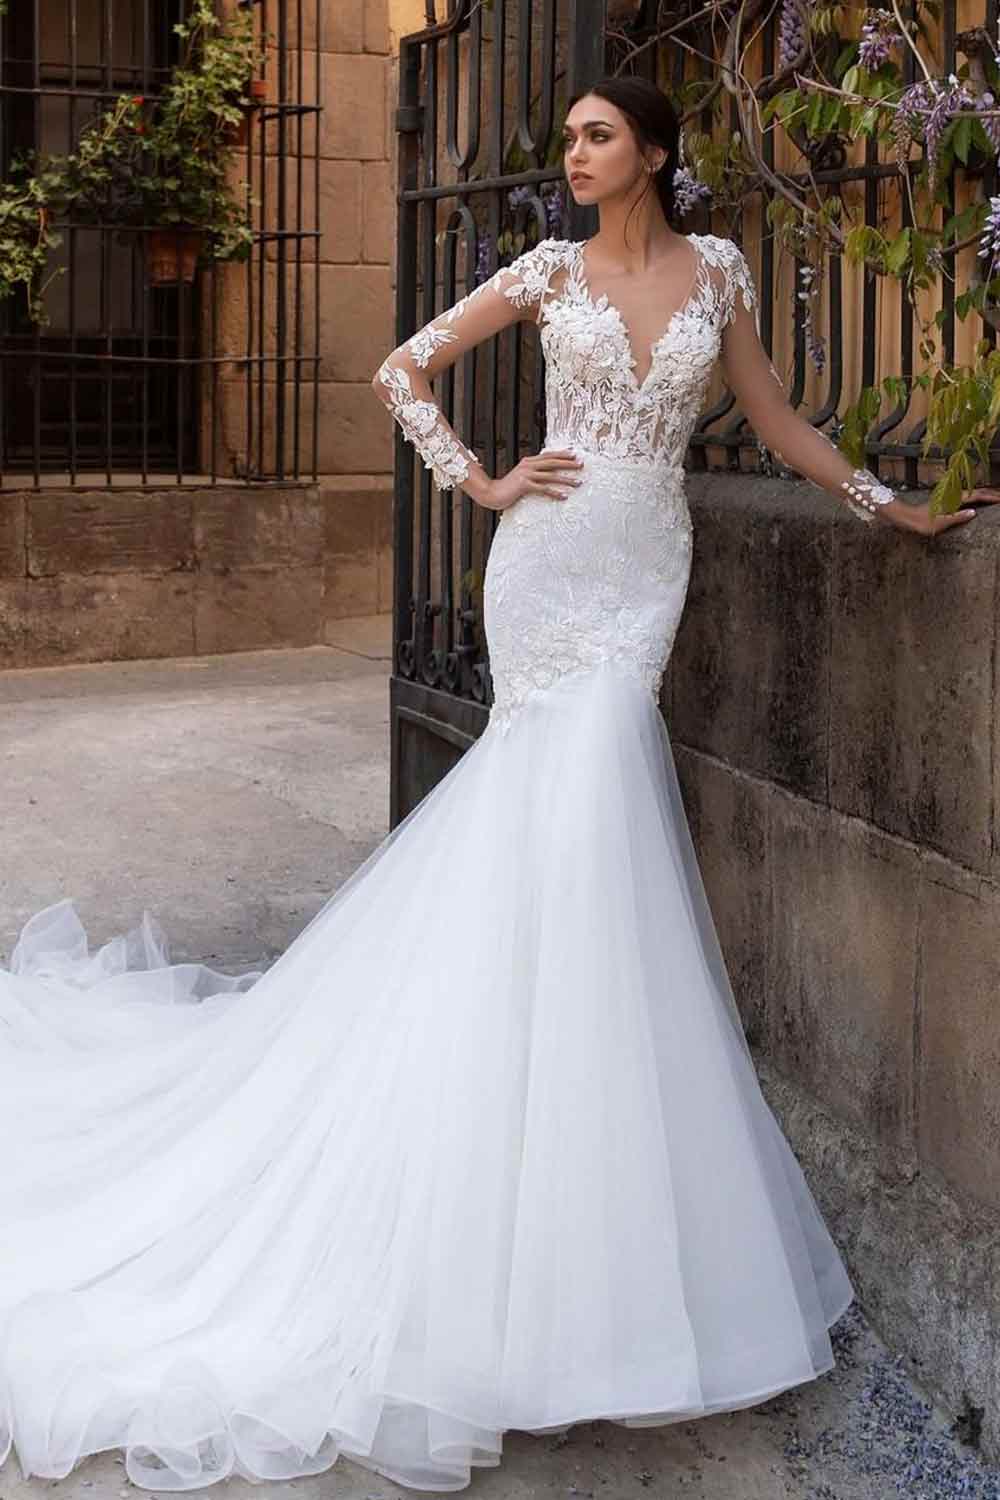 What Is A Mermaid wedding Dress? #wedding #weddingdress